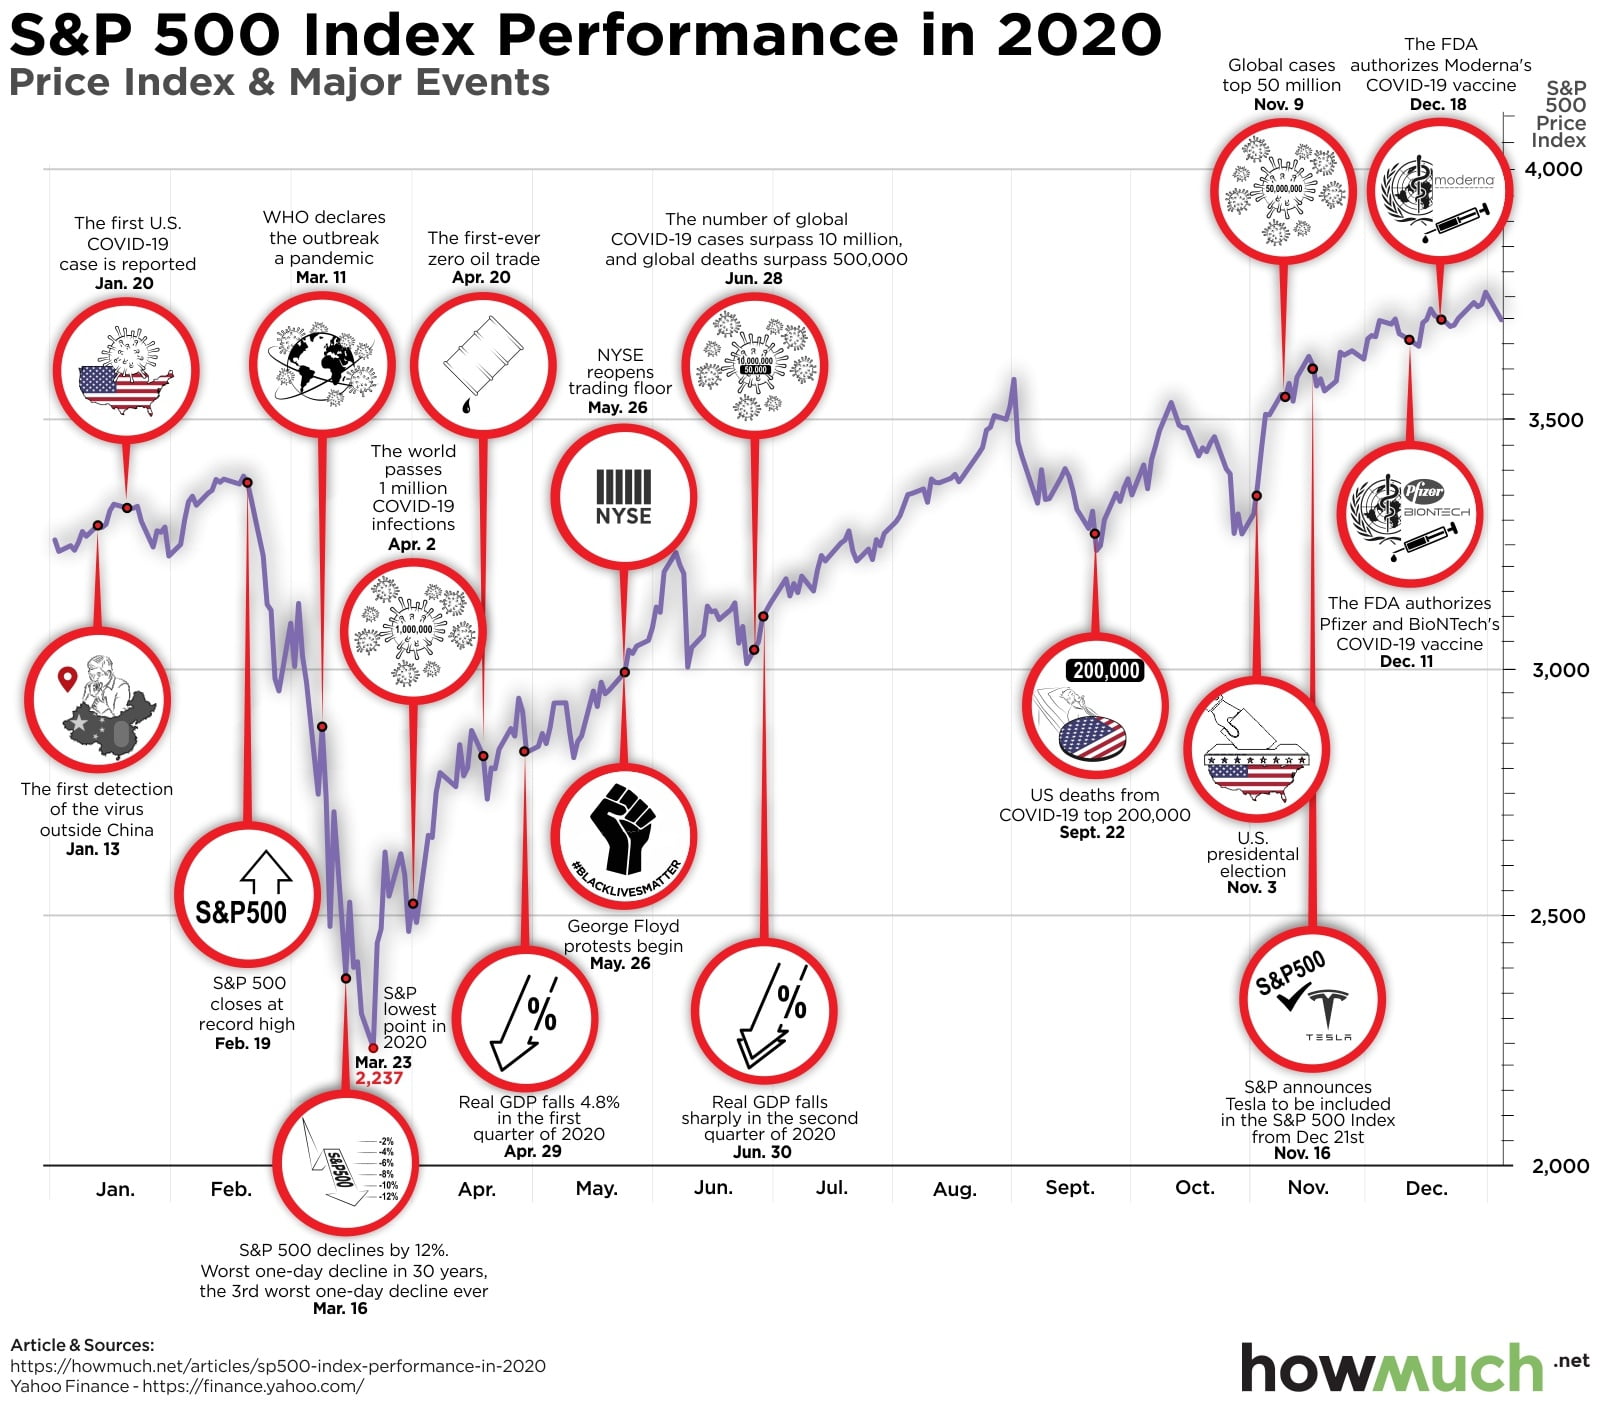 The S&P 500 Index Generated Fantastic Returns